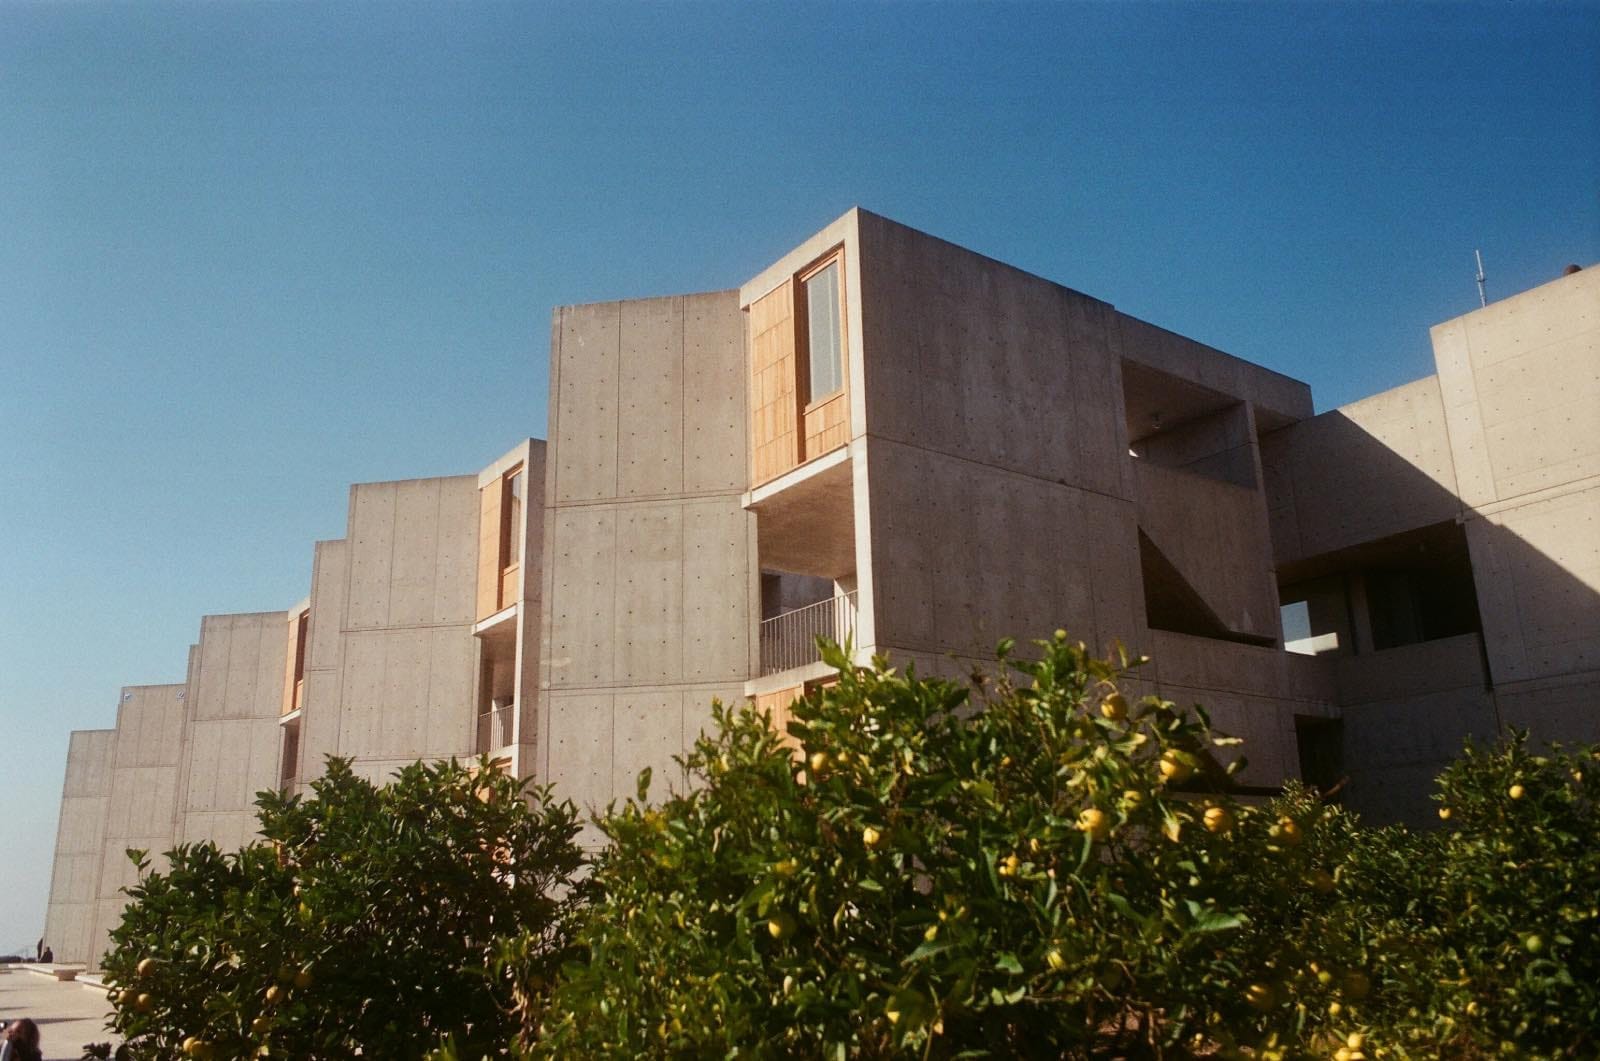 arquitectos famosos, brutalismo,Salk Institute, California, obra de Louis Kahn